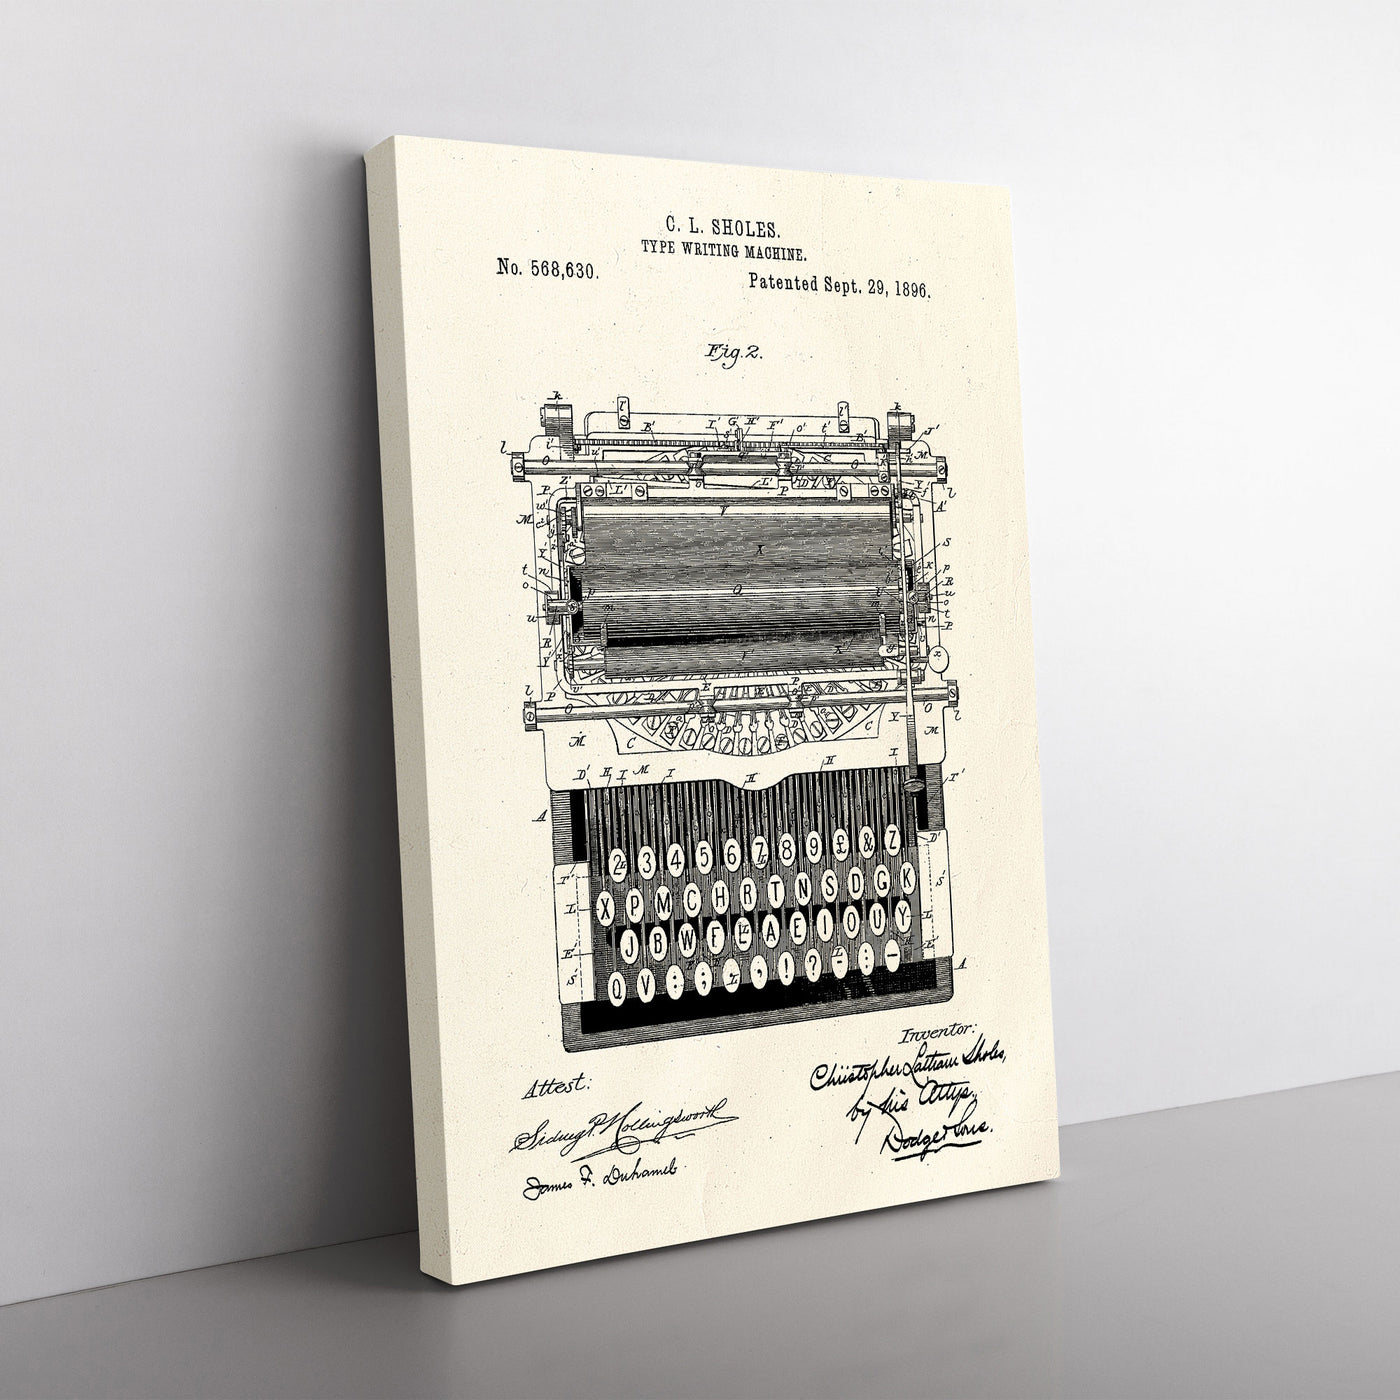 Typewriter Patent